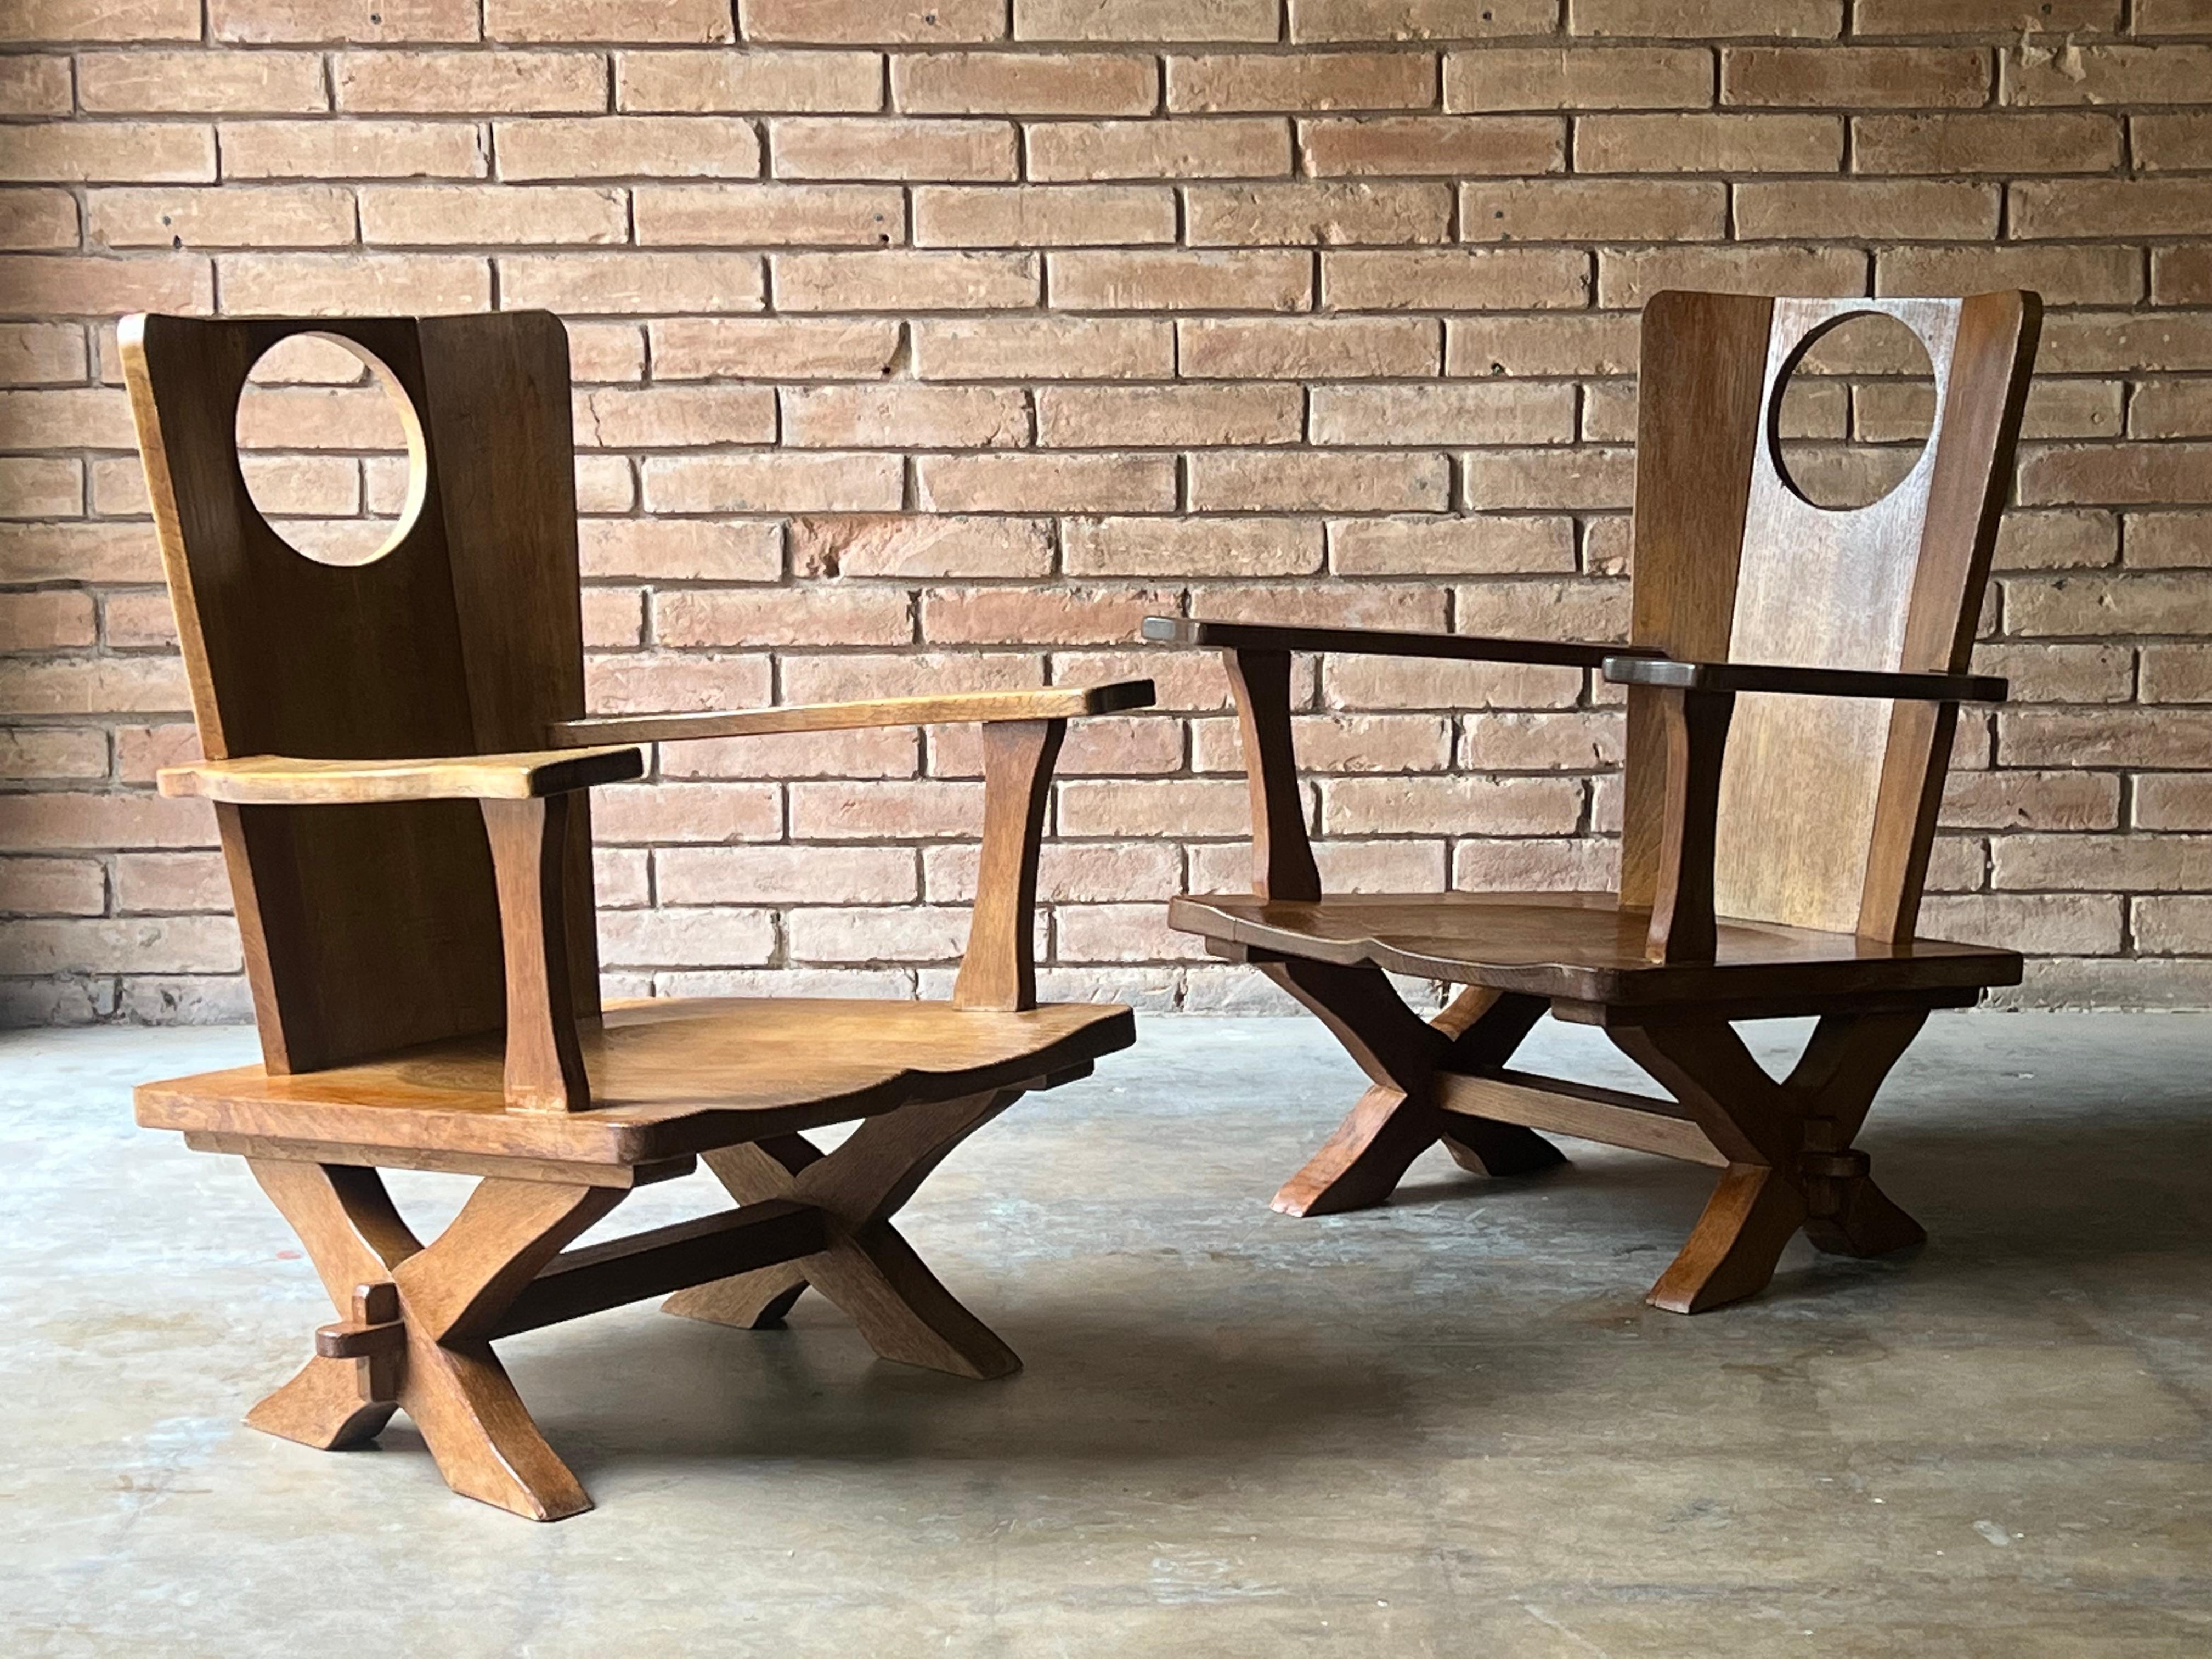 Paire de fauteuils bas peu communs en chêne, probablement fabriqués en Belgique ou aux Pays-Bas, vers les années 1970. Ils sont sculpturaux et bien faits, tout en étant fonctionnels et confortables. Ils ont une belle qualité constructive. Ceux-ci